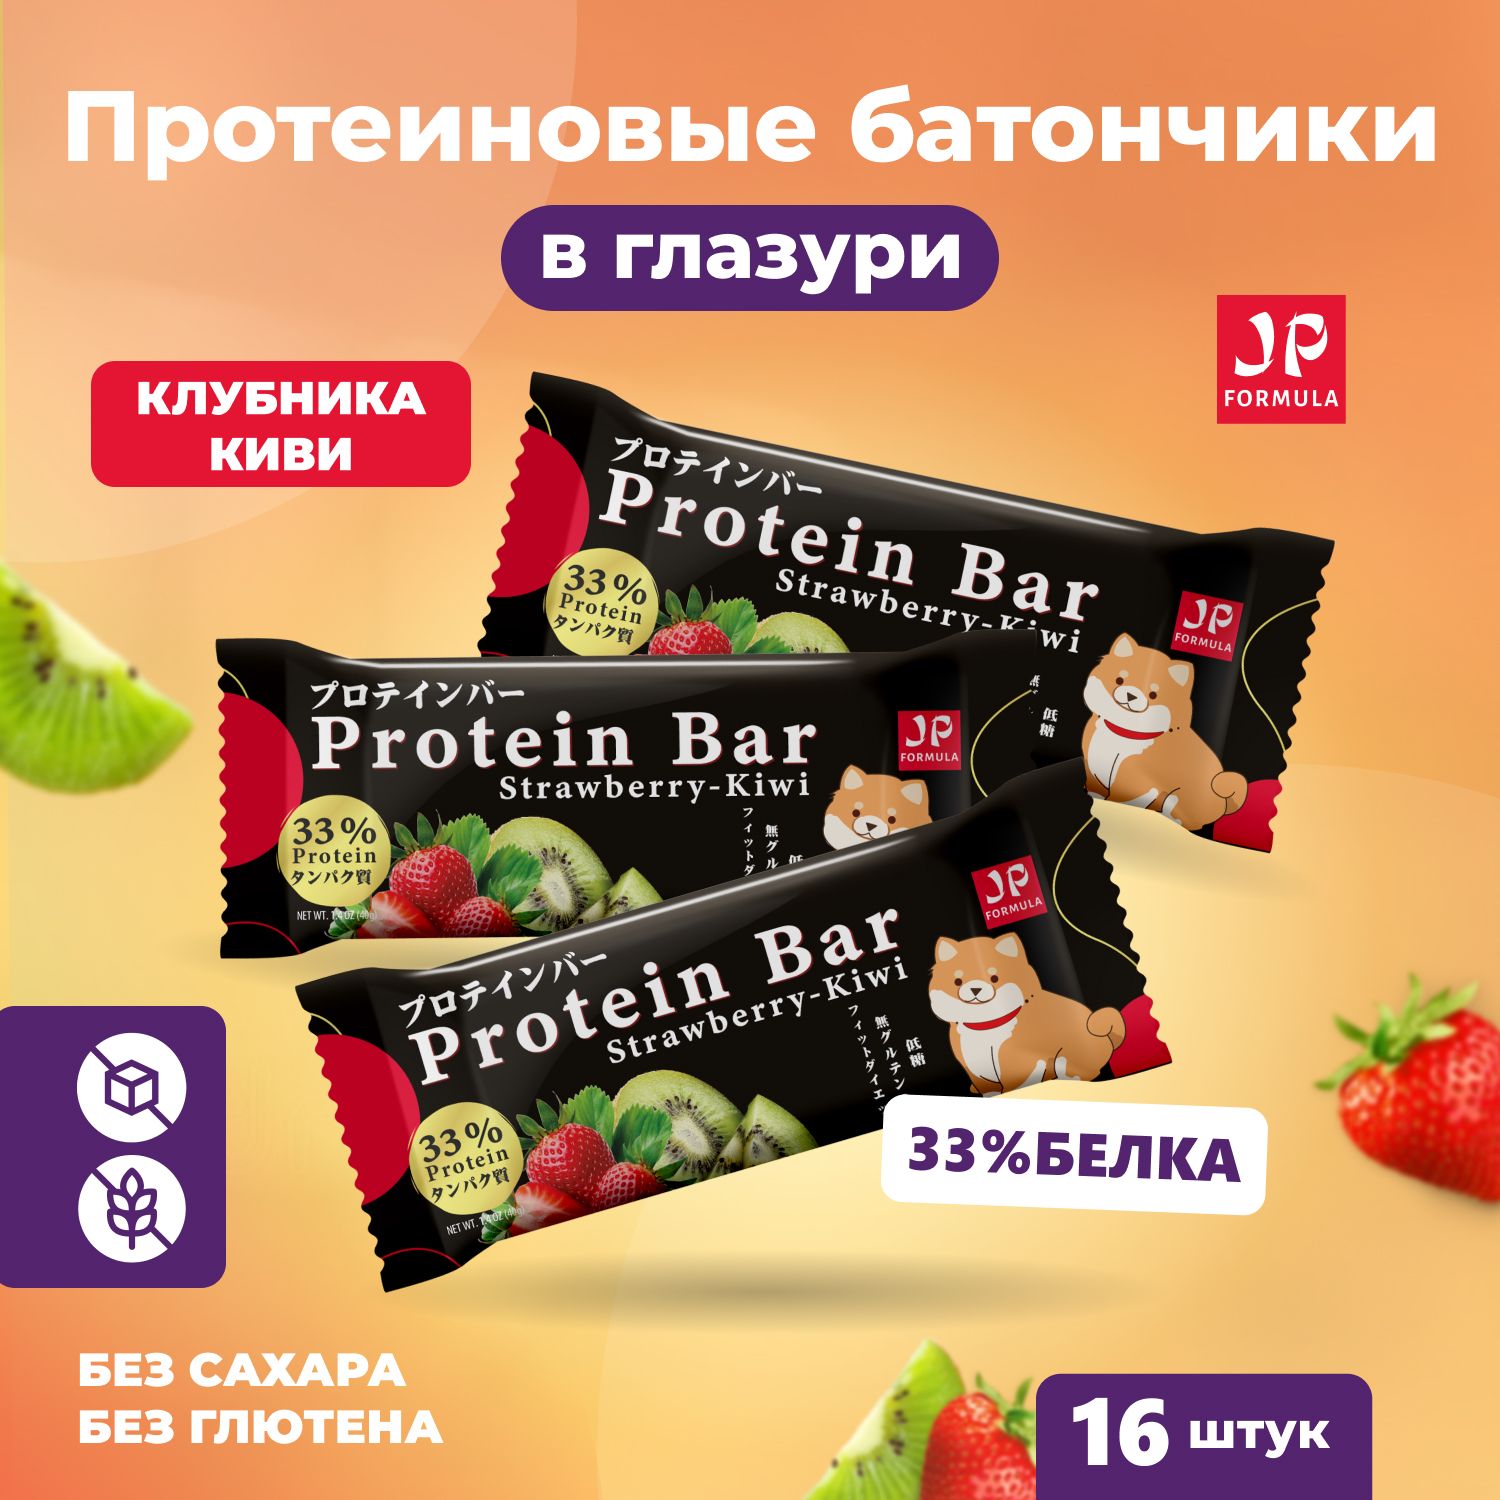 Протеиновые батончики без сахара набор 16шт, спортивные батончики для похудения protein bar, спортпит диетический, пп питание